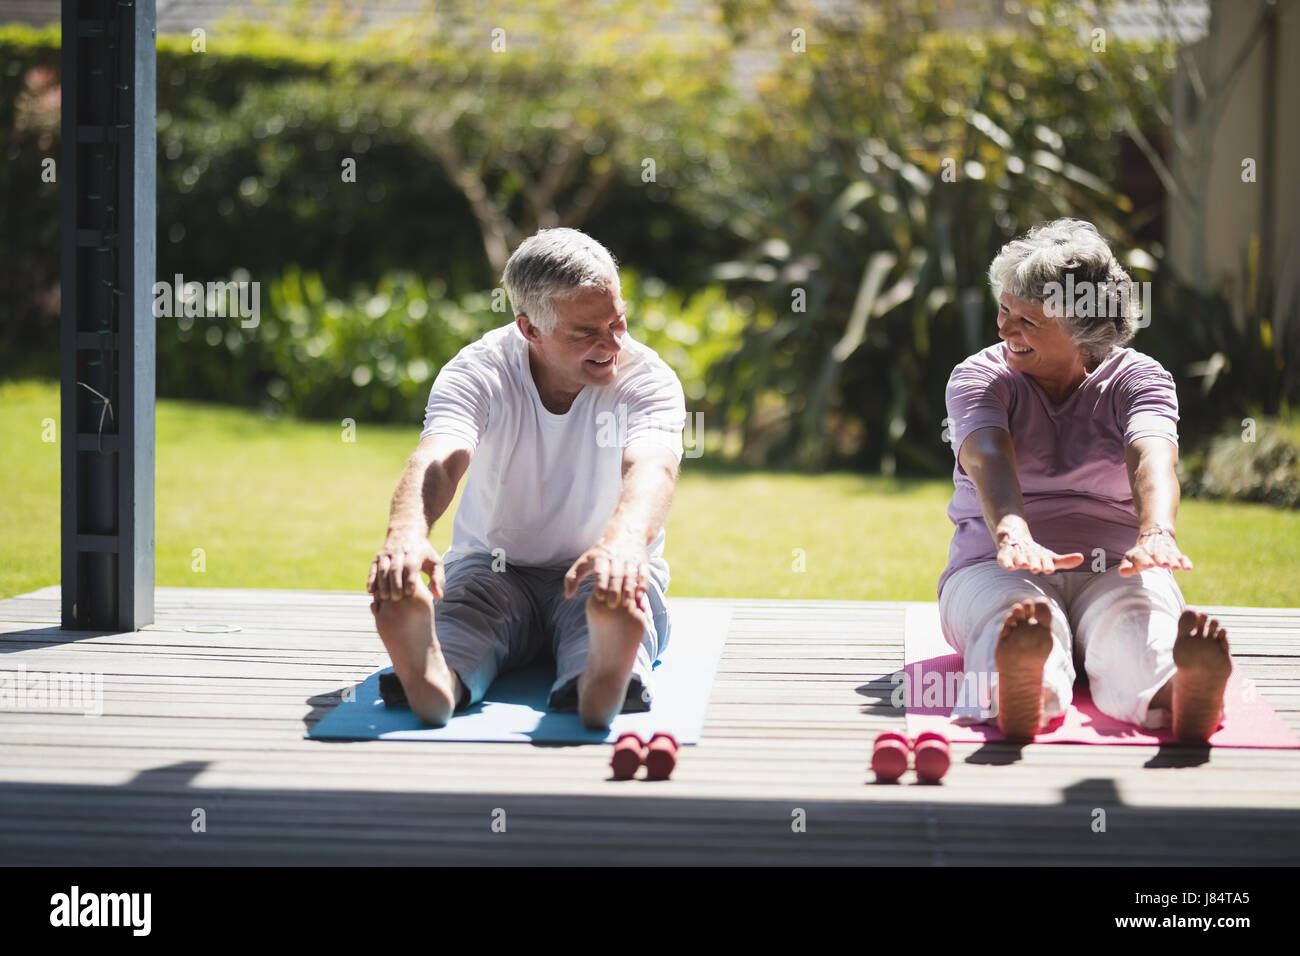 Älteres paar sahen einander während des Trainings zusammen auf Matte zu Veranda Stockfoto